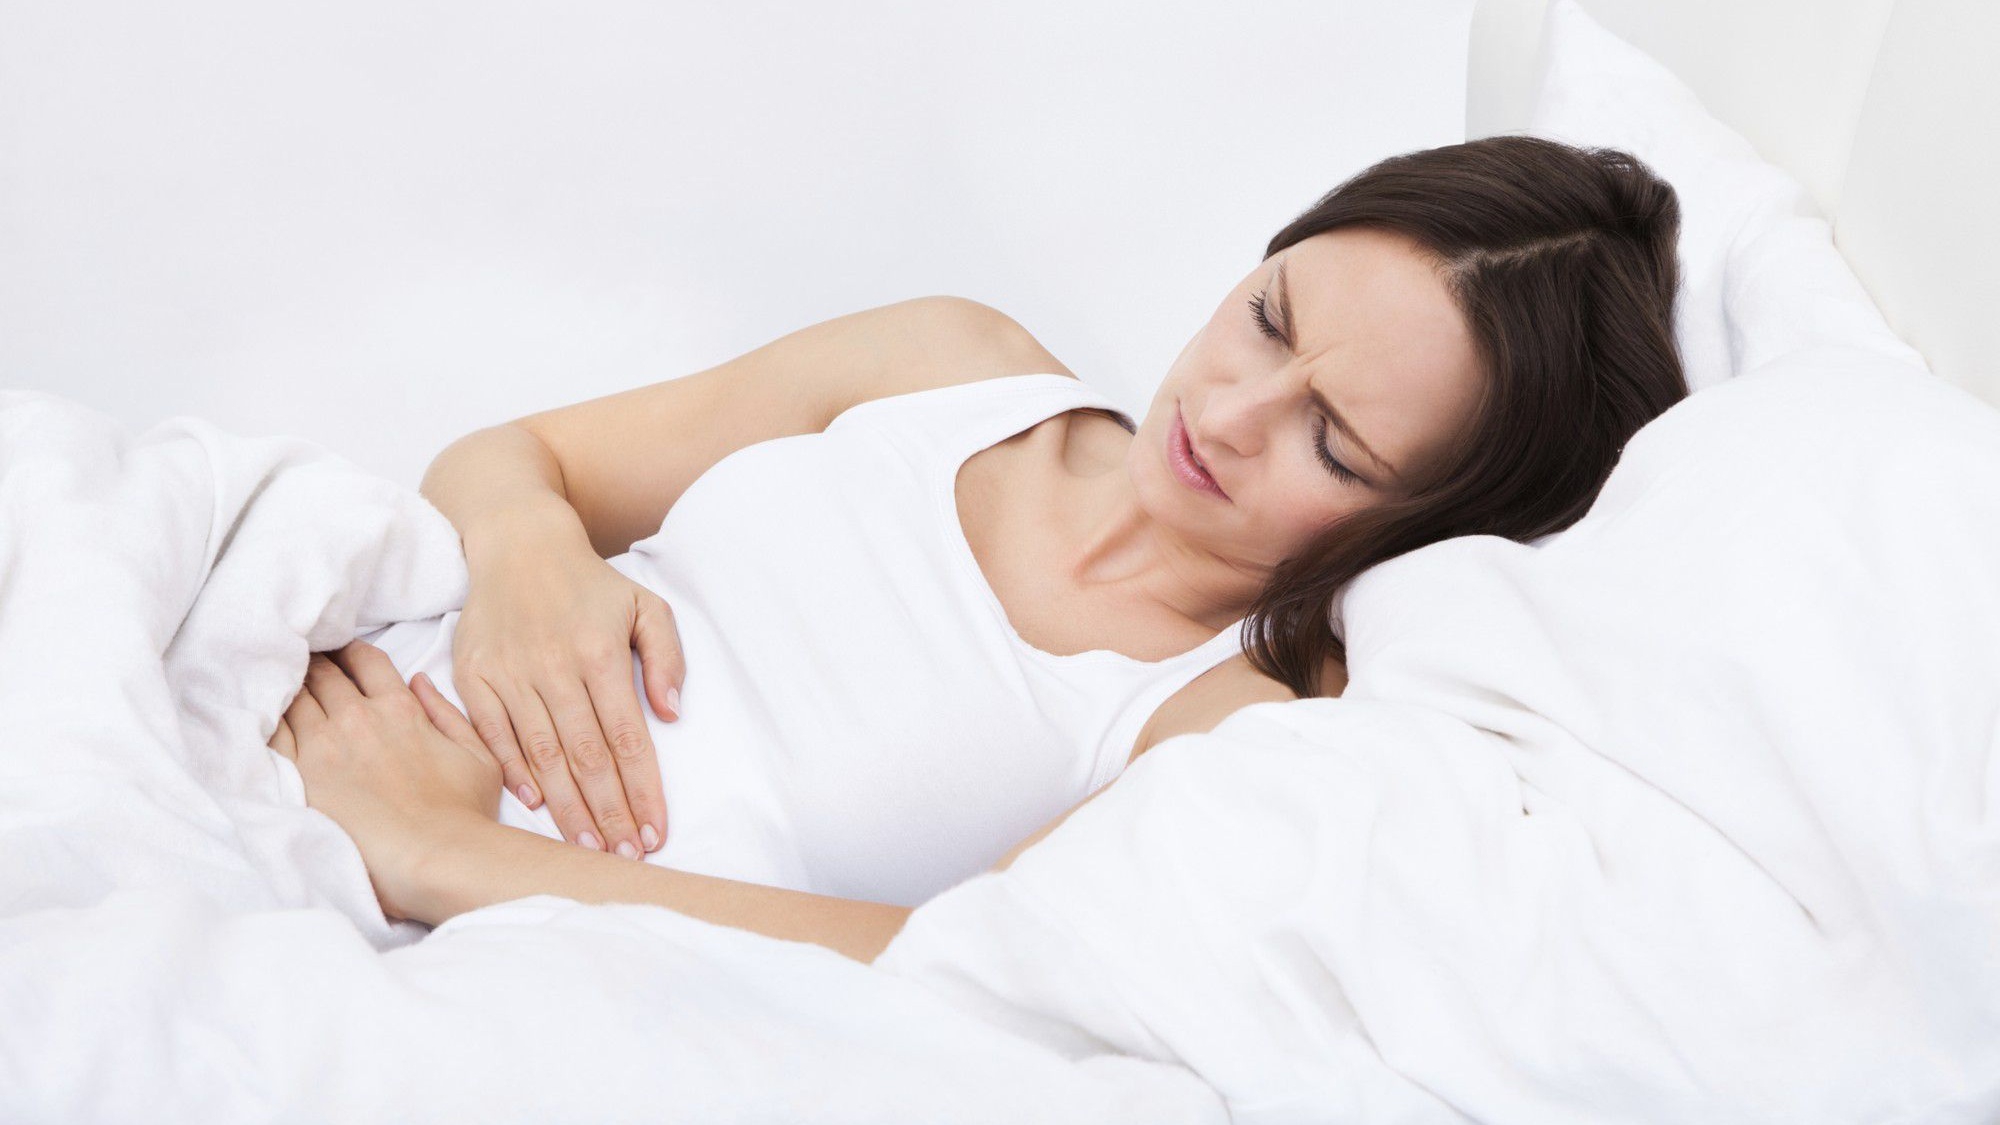 Tại sao đau bụng dưới và đau lưng lại xảy ra trong thời kỳ mang thai?
